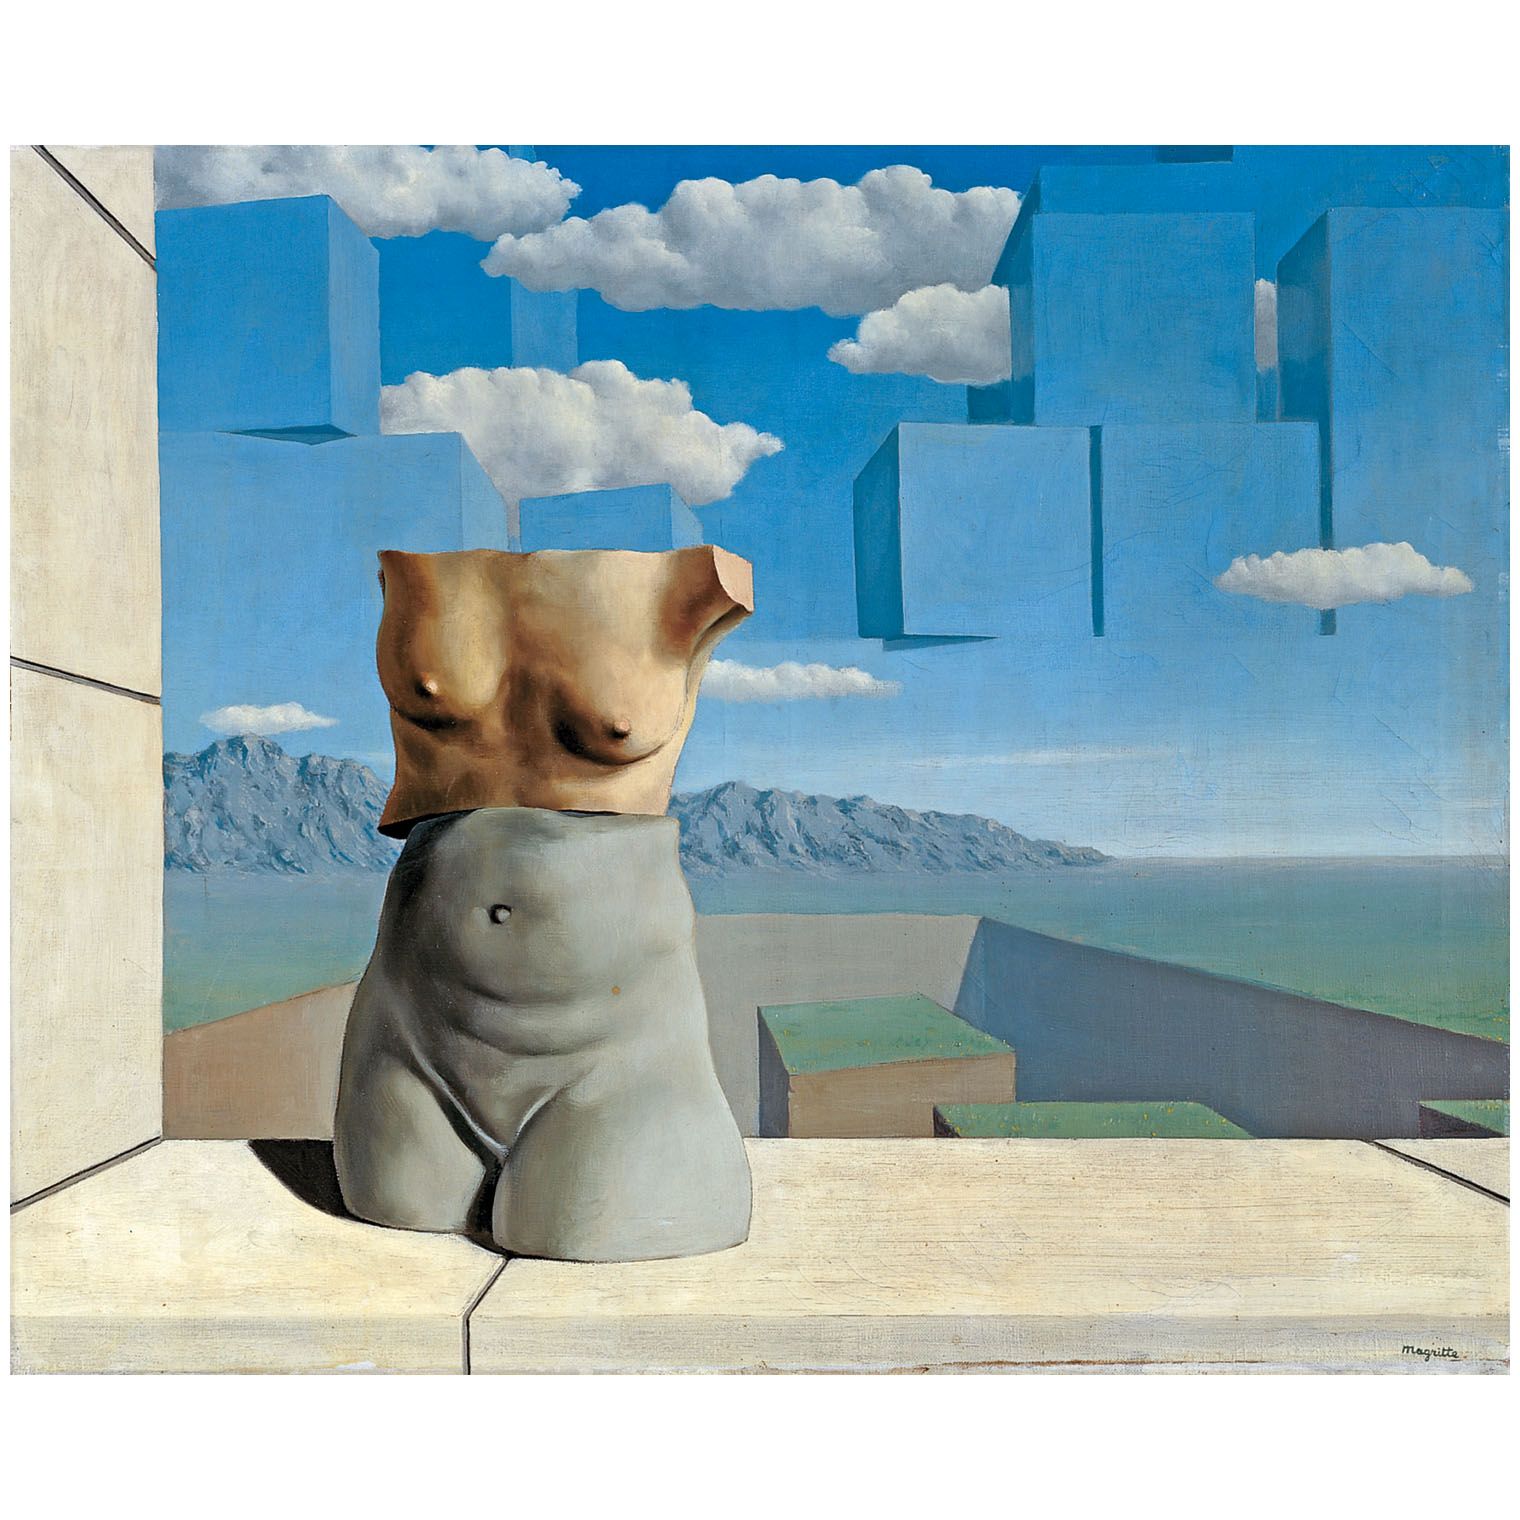 Rene Magritte. Les Marches de l'Été. 1939. Center Pompidou